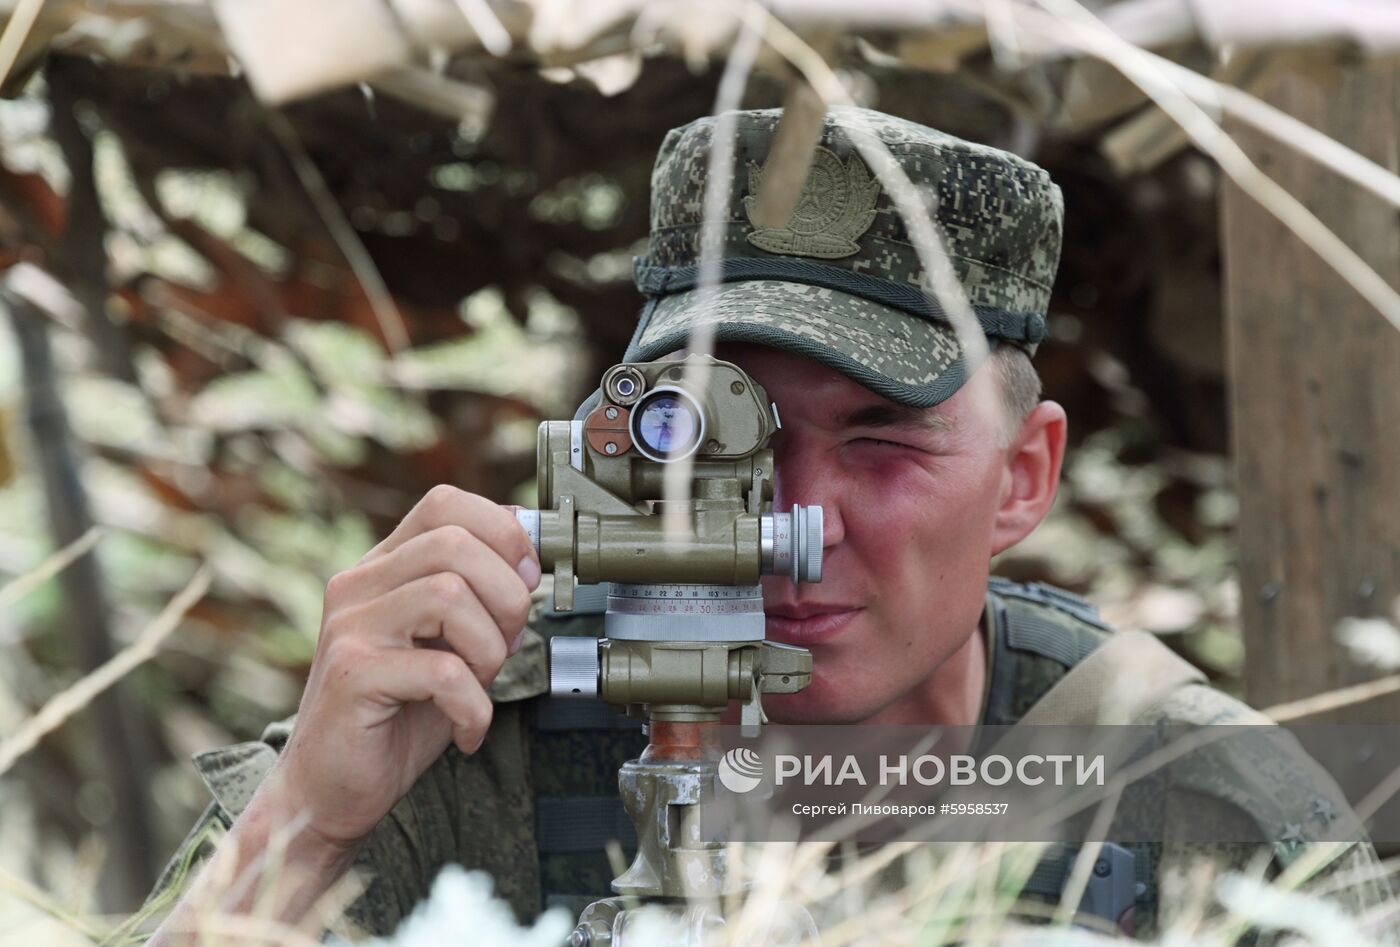 Тактические учения с мотострелковыми подразделениями ЮВО в Ростовской области